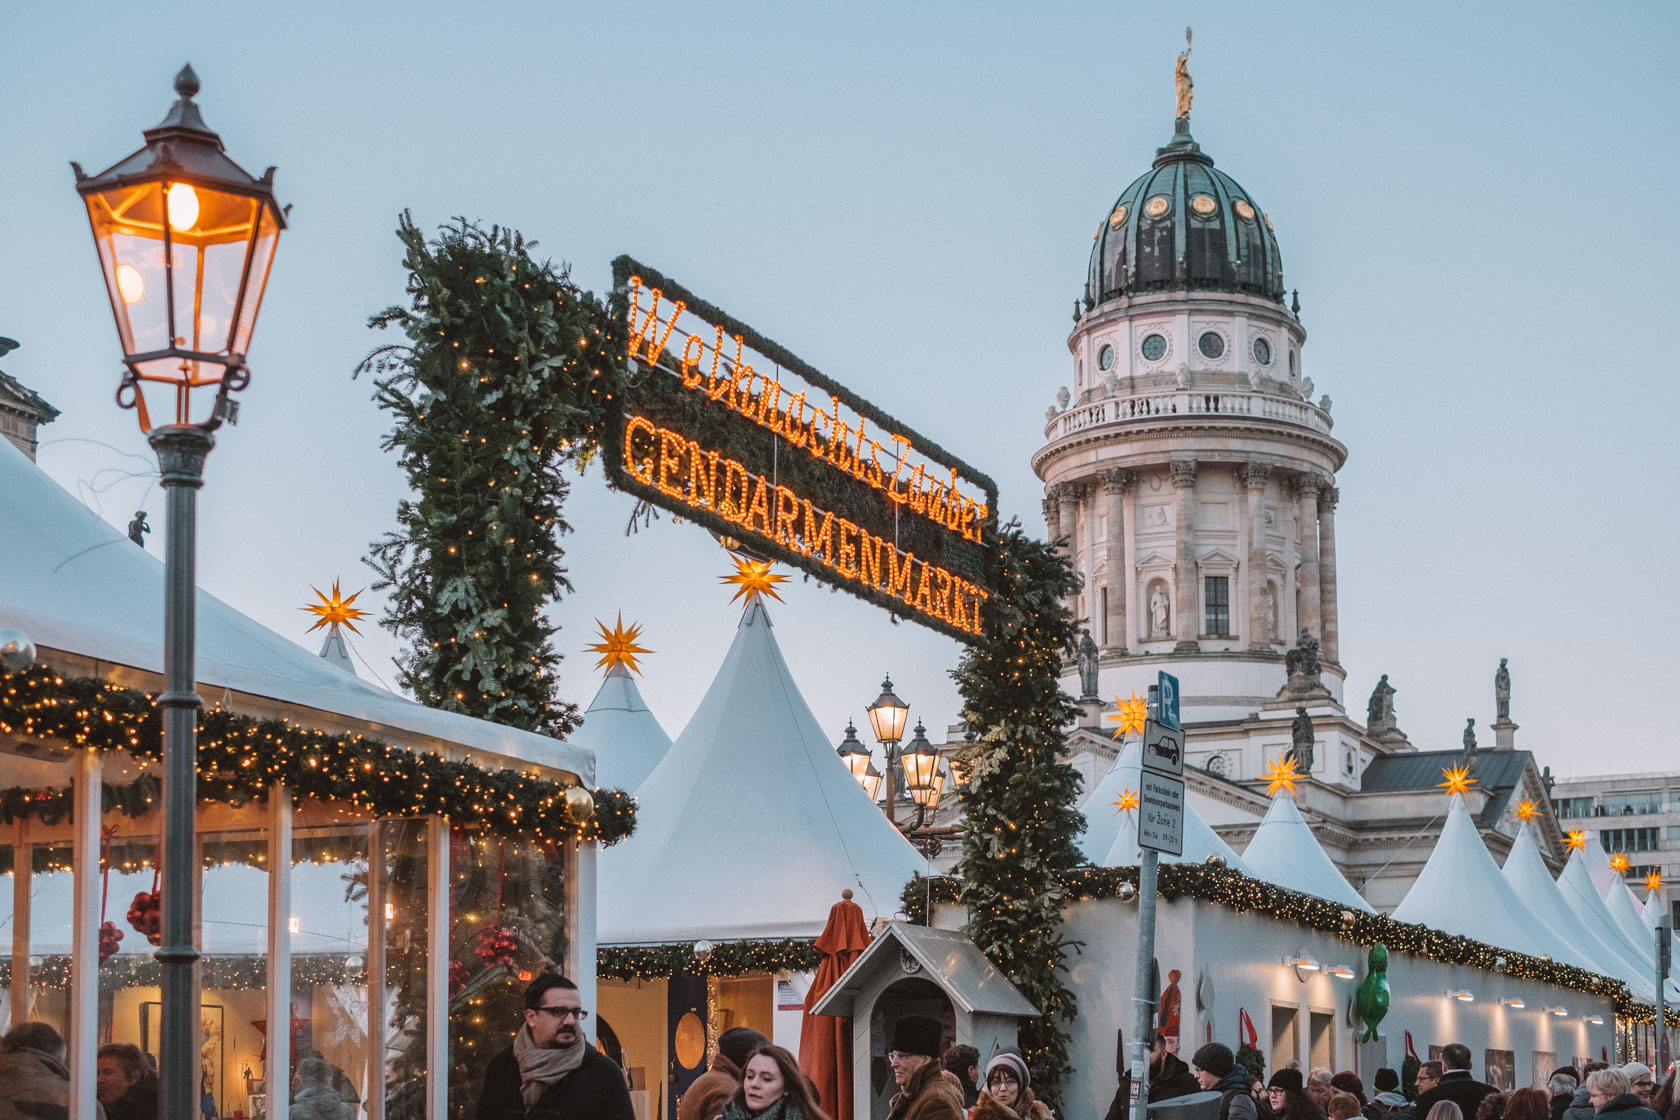 Berlin Christmas market at Gendarmenmarkt